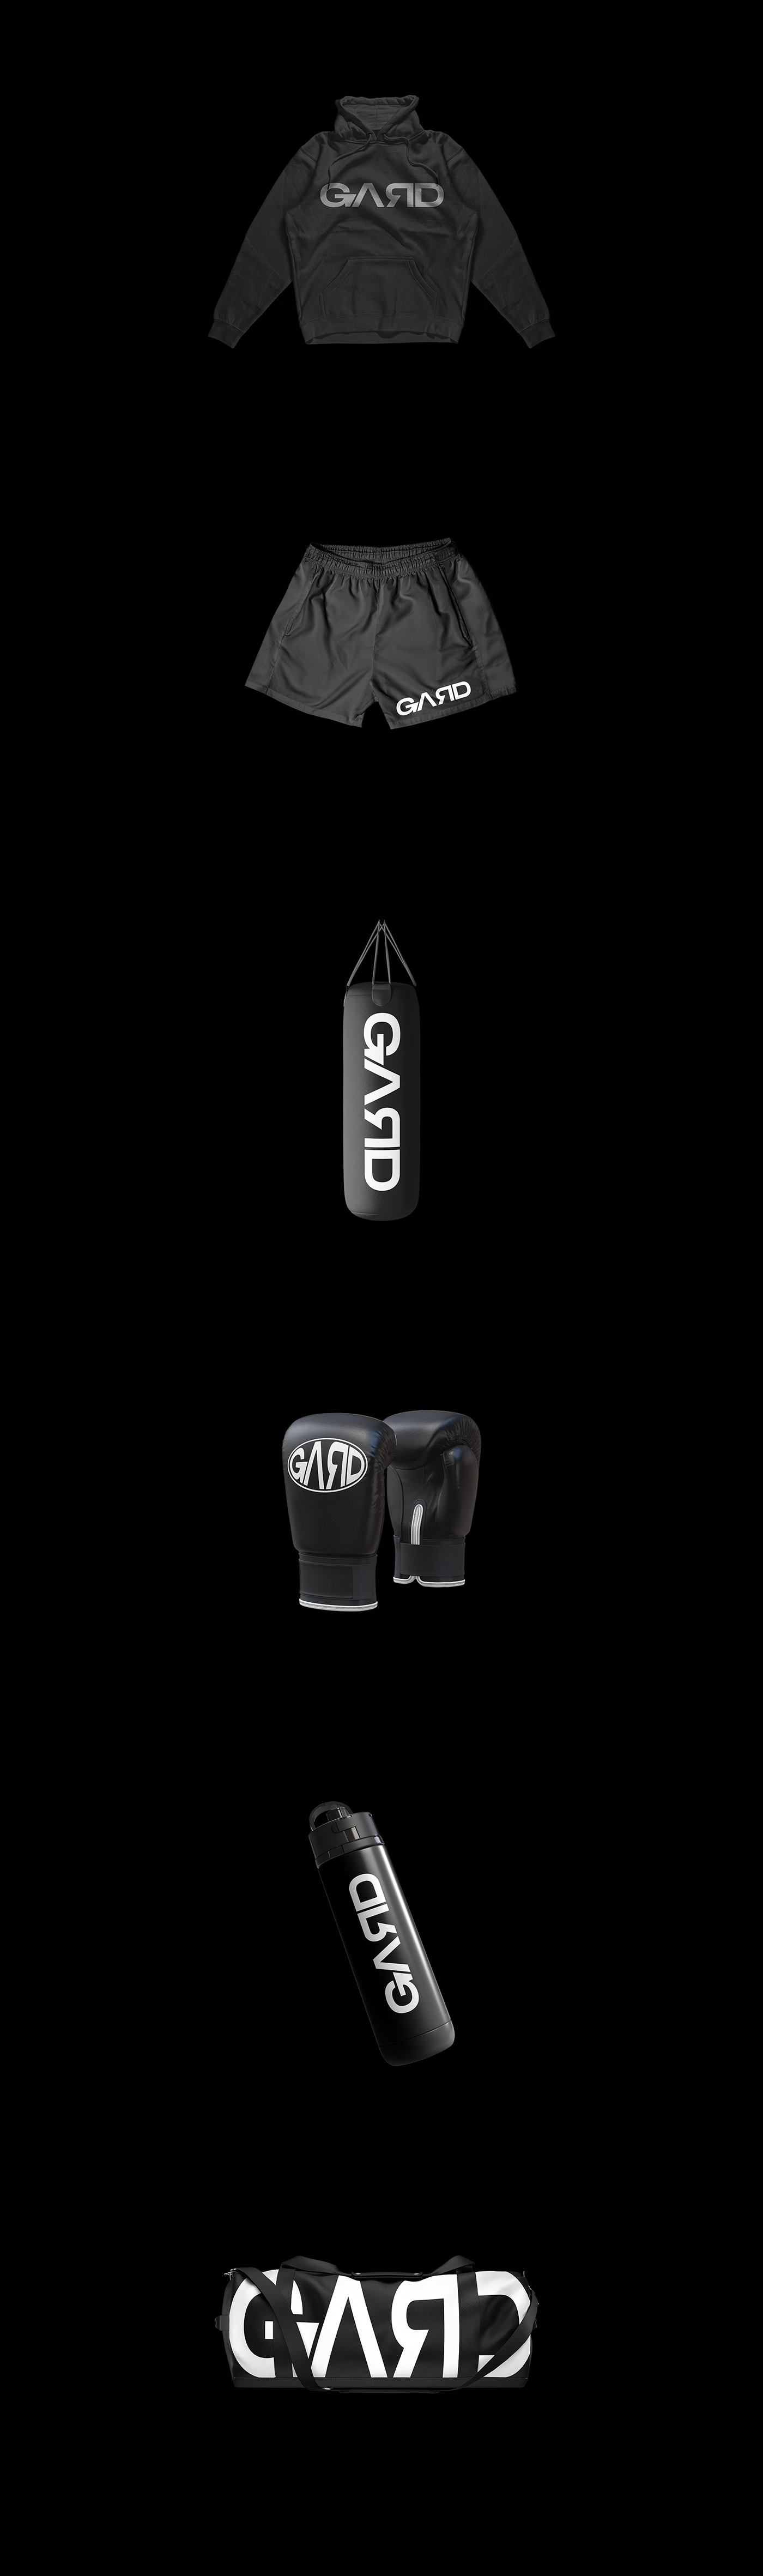 fightwear Sportswear UFC Sports Design Boxing gym workout brand identity Graphic Designer mma design